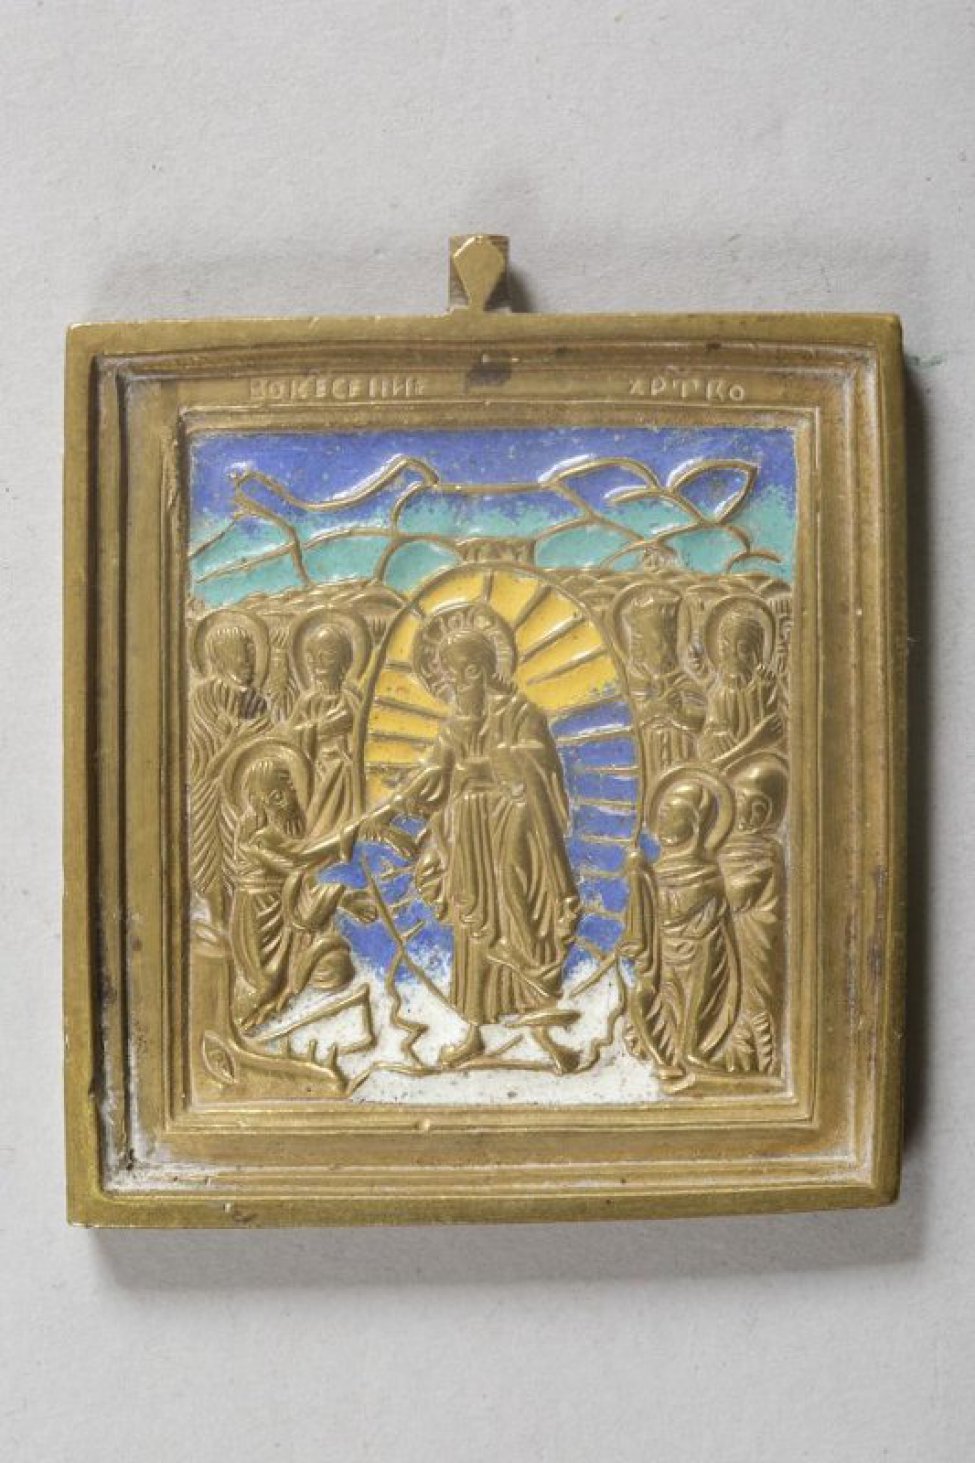 В центре, в лучистой мандорле, изображен Христос, слева и справа от него - избранные святые. Эмаль четырехцветная: синяя, зелено-голубая, белая, желтая.